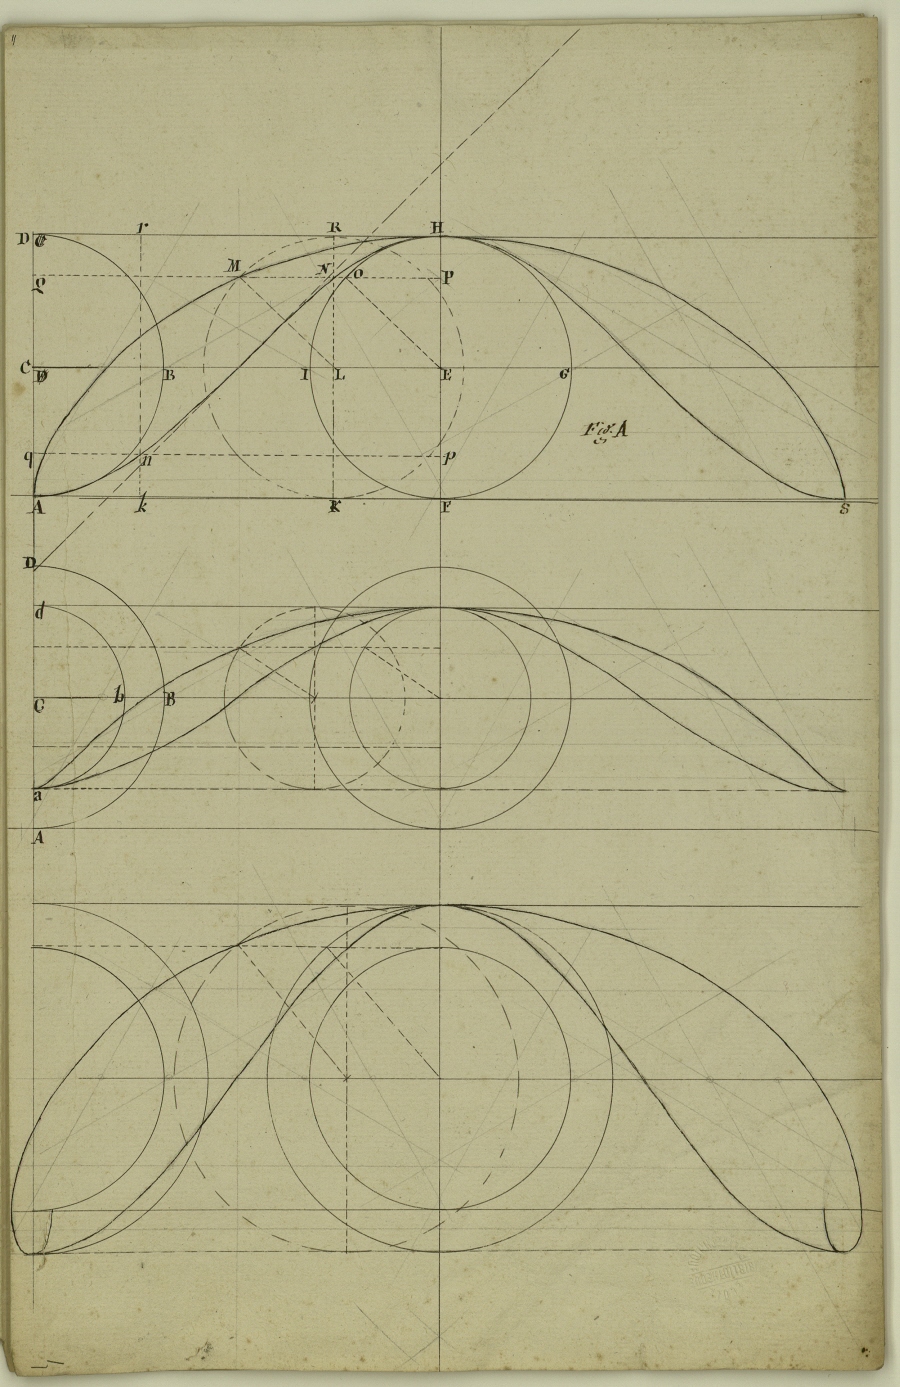 Extrait des observations sur la composition des mouvements, et sur le moyen de trouver les tangentes des lignes courbes, par M. de Roberval(sic)